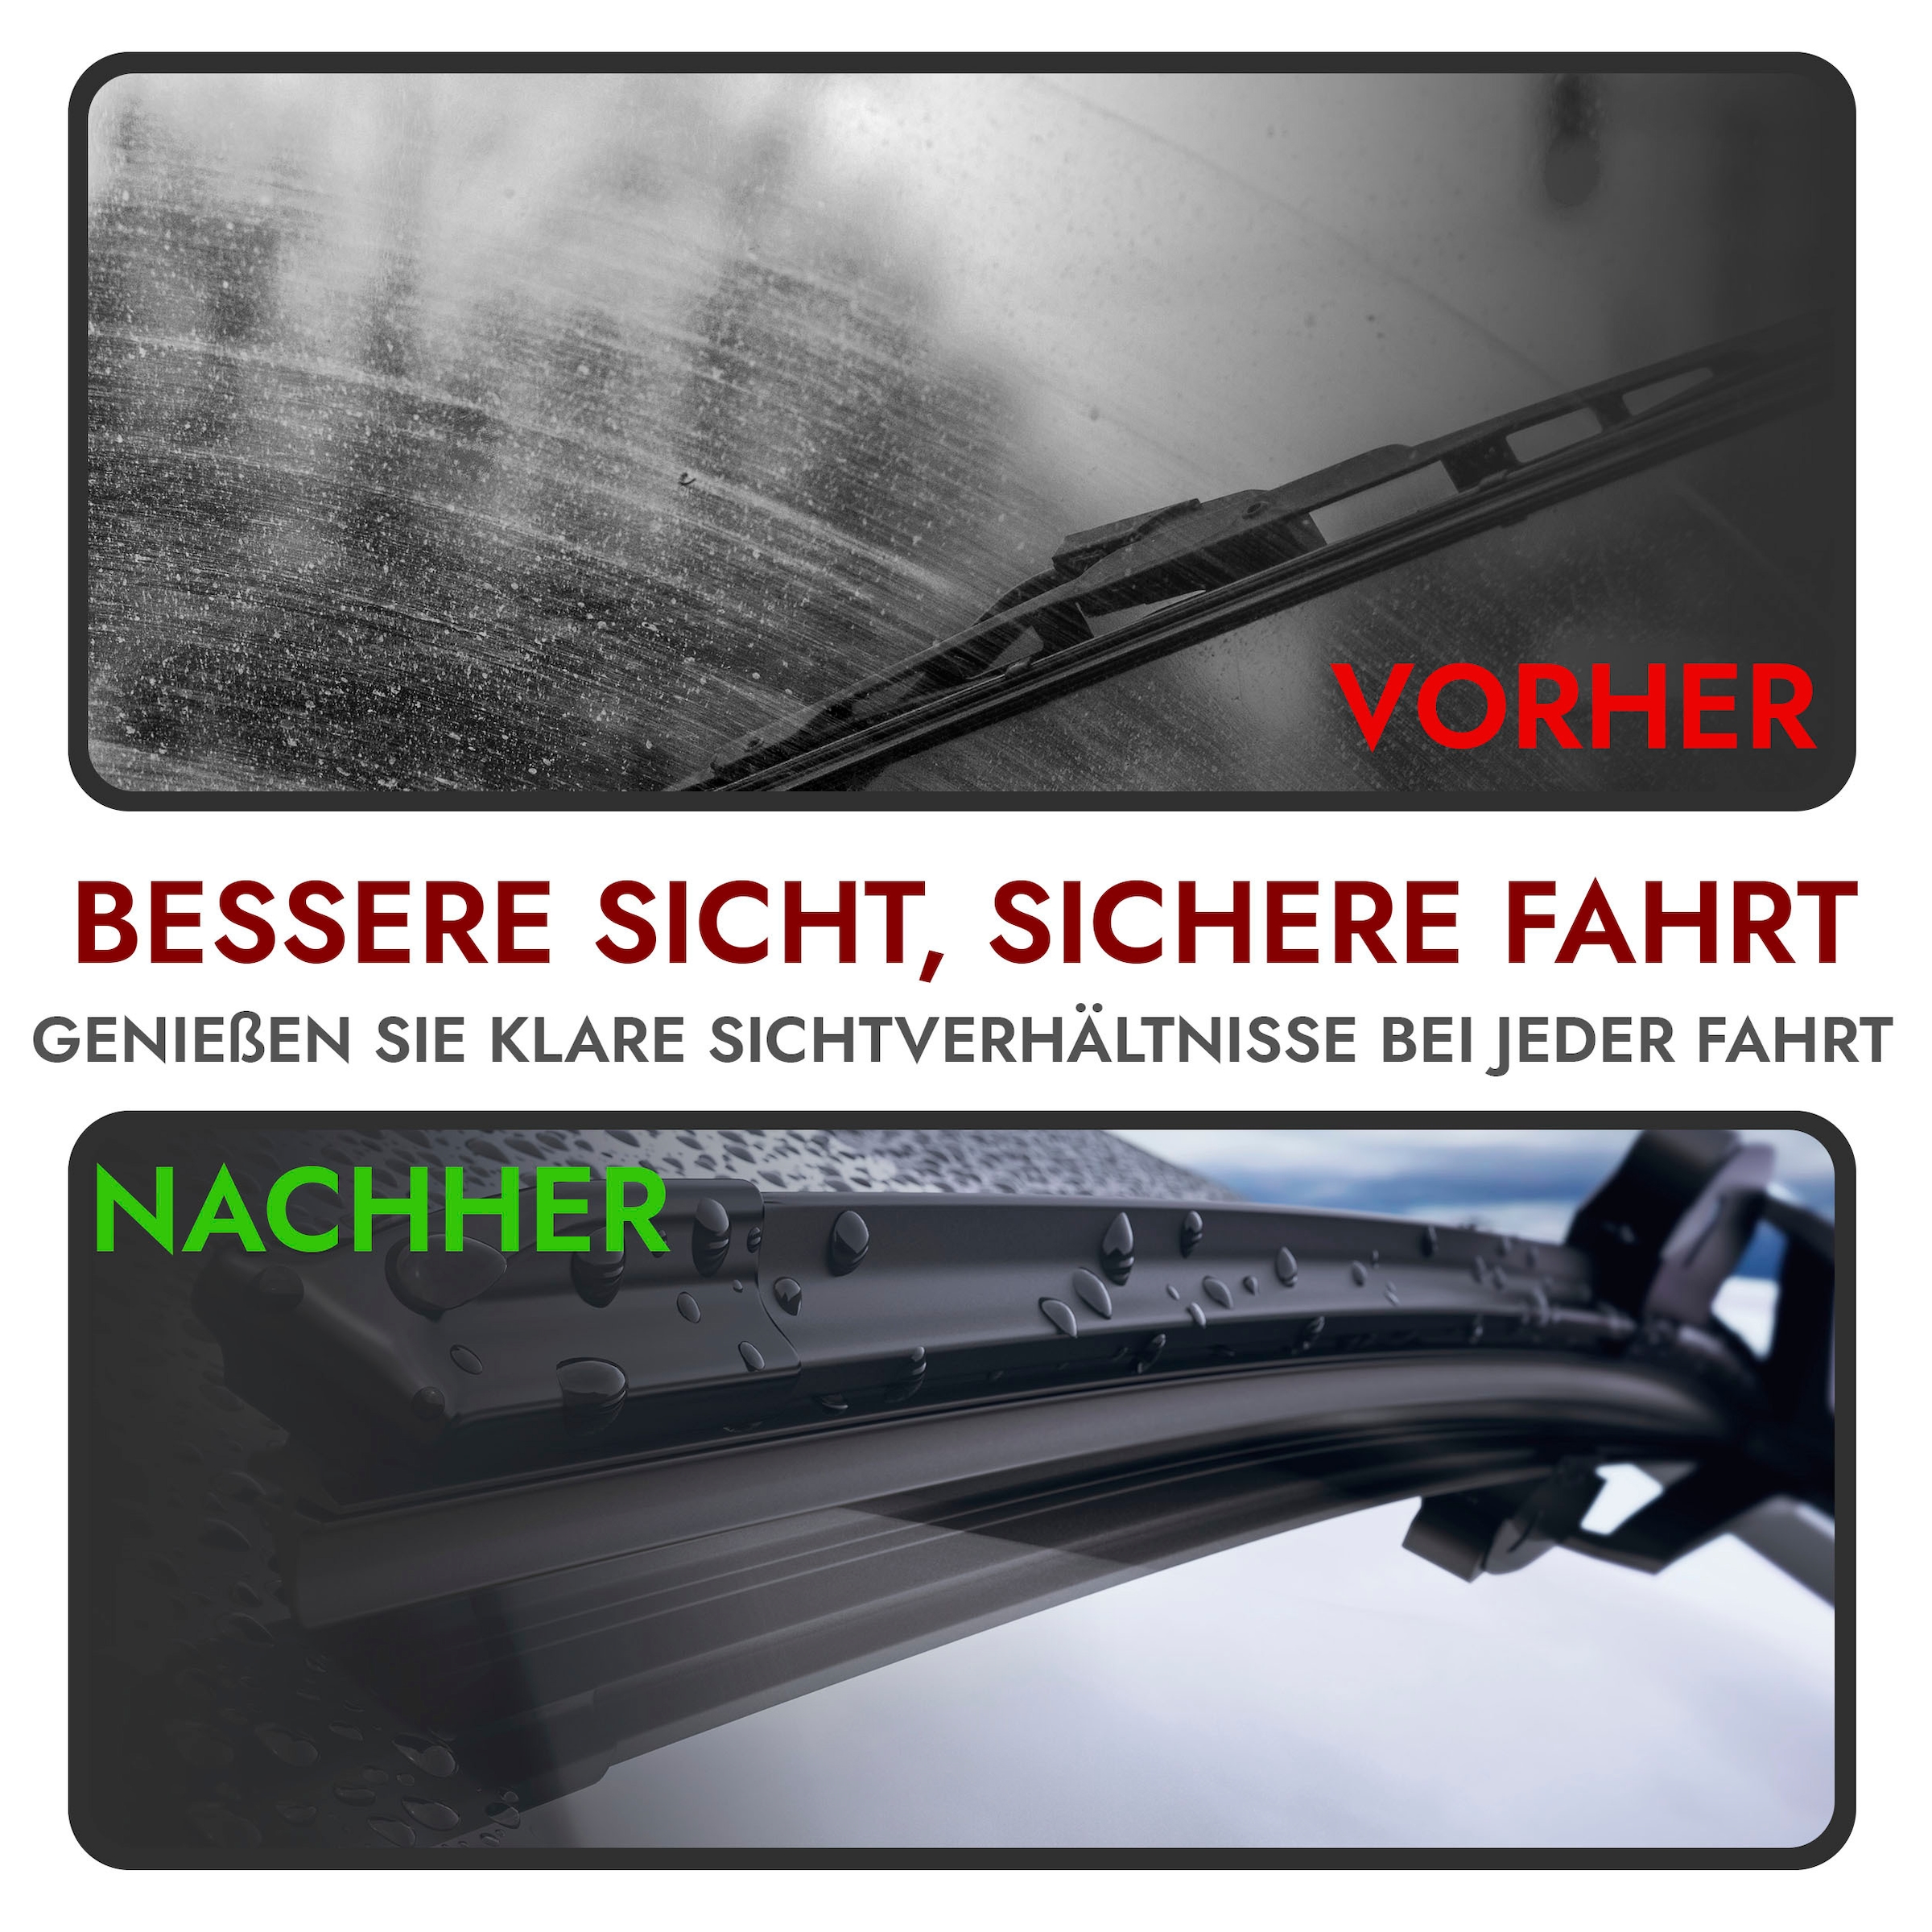 RECAMBO Scheibenwischblätter für VW T4 - alle Modelle - BJ 1990-2003 -  Scheibenwischer, Front: 525 mm + 525 mm - Klare Sicht, jederzeit